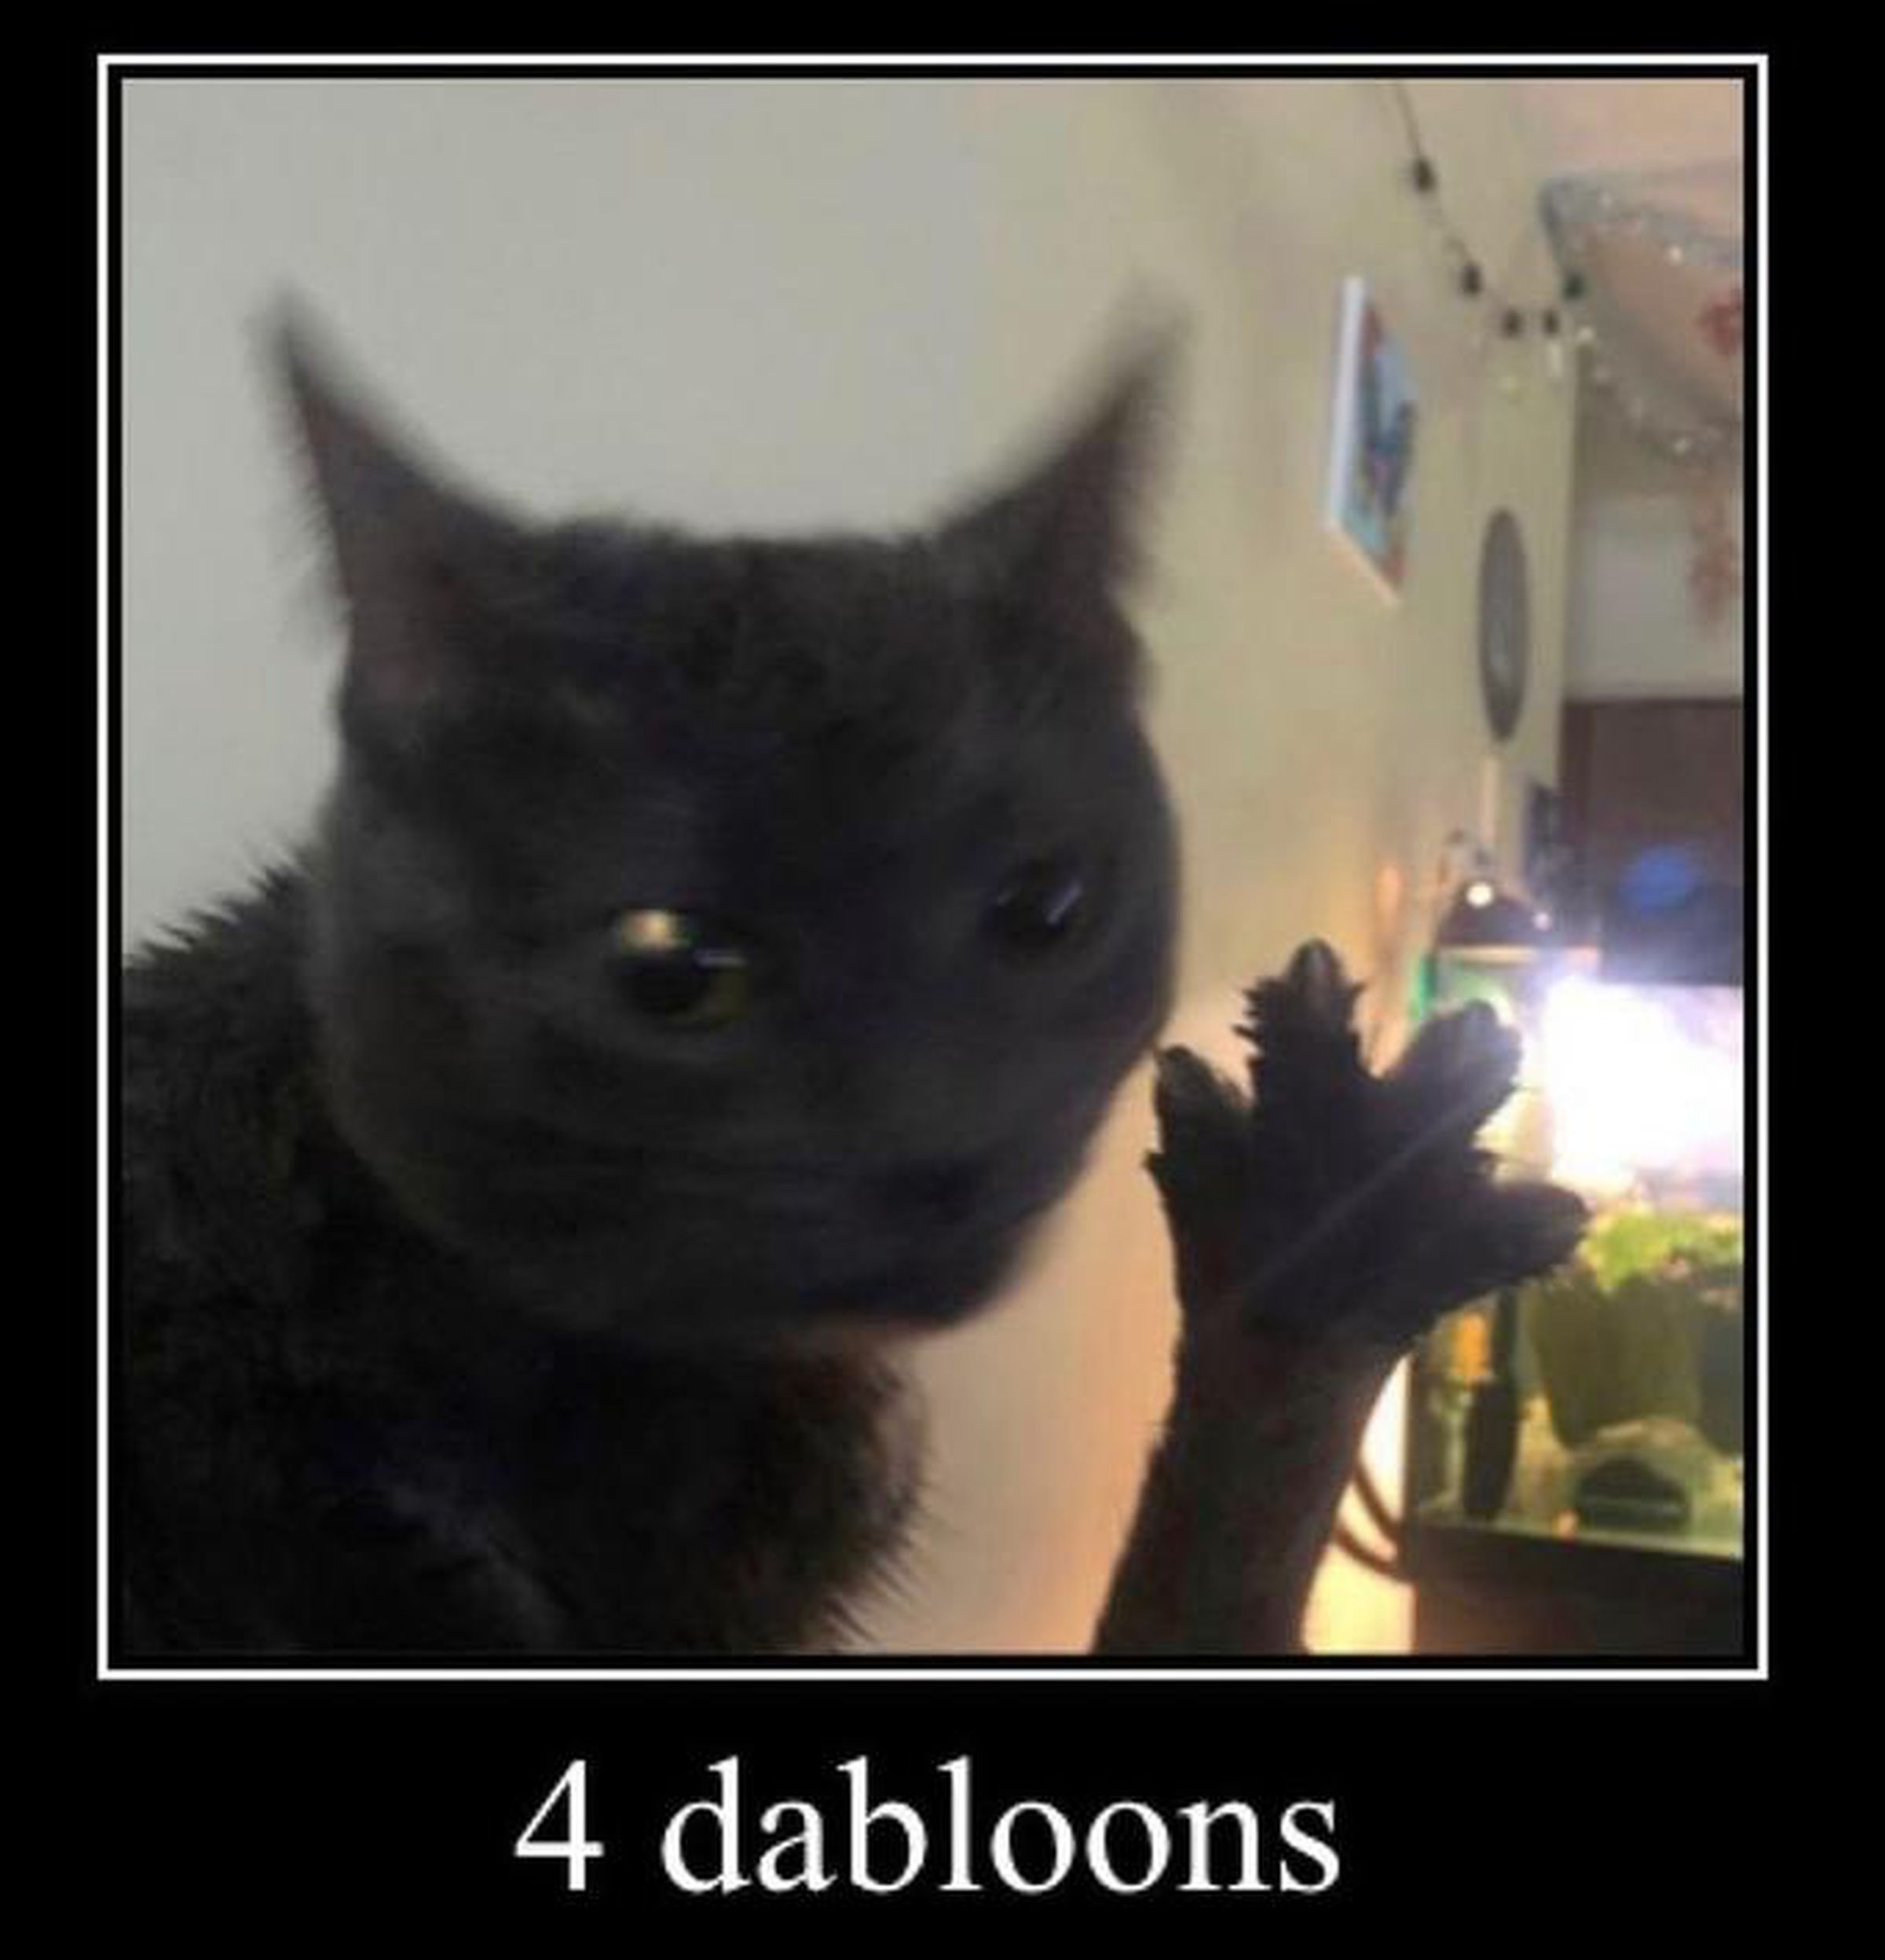 Um gato segurando uma pata estendida.  O texto abaixo da imagem diz “4 dabloons”.